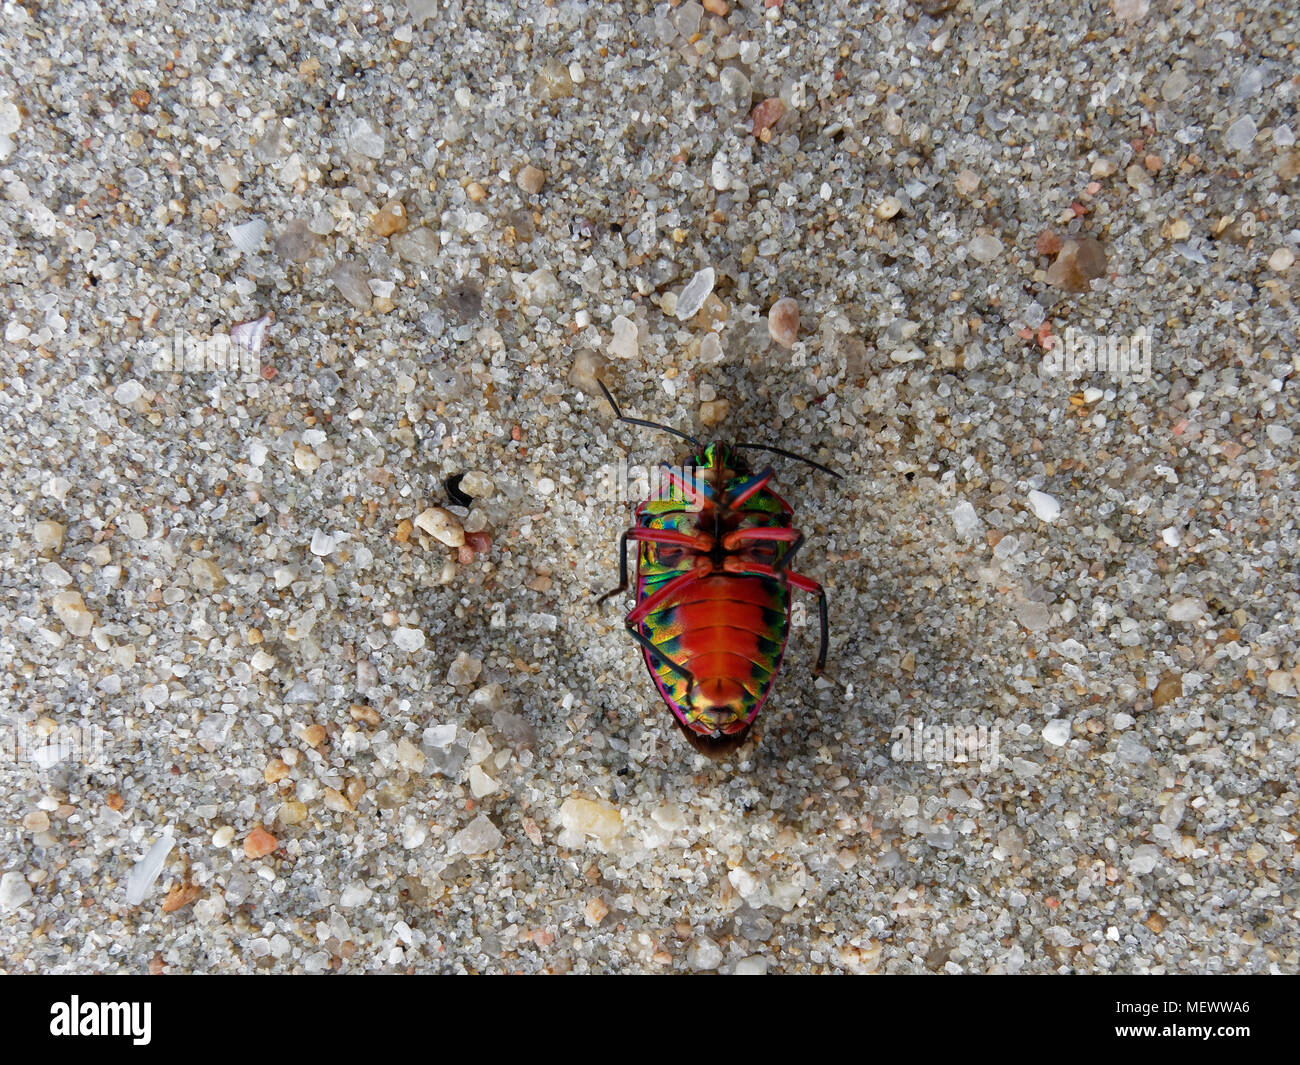 L'envers de l'écran arc-en-ciel bug roule sur son dos de plus de sable sur fond de plage, ce qui est signe que le bug va mourir Banque D'Images